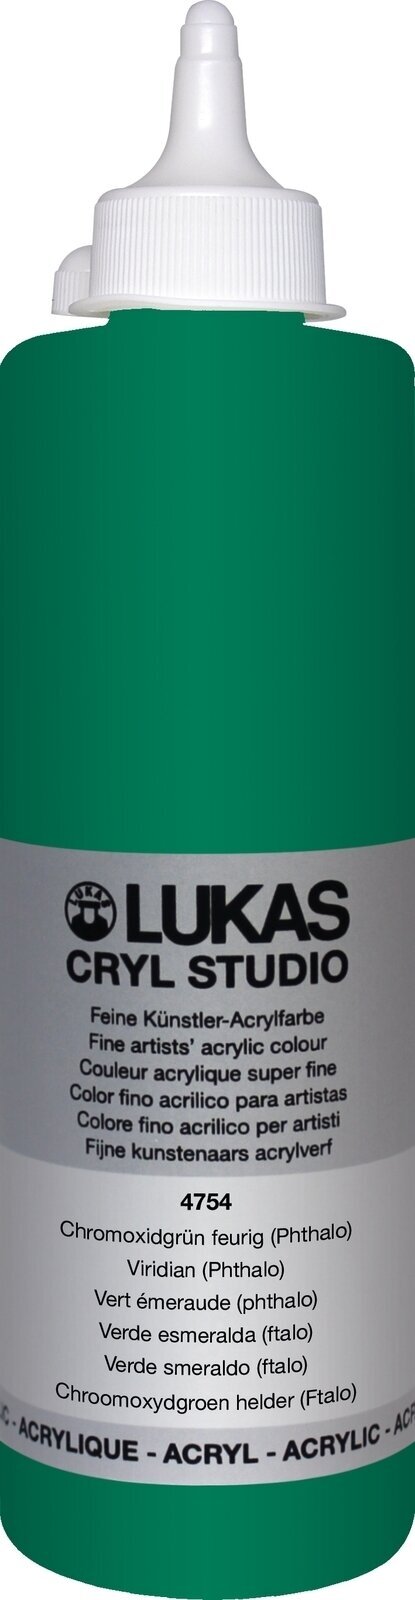 Tinta acrílica Lukas Cryl Studio Tinta acrílica 500 ml Viridian (Phthalo)